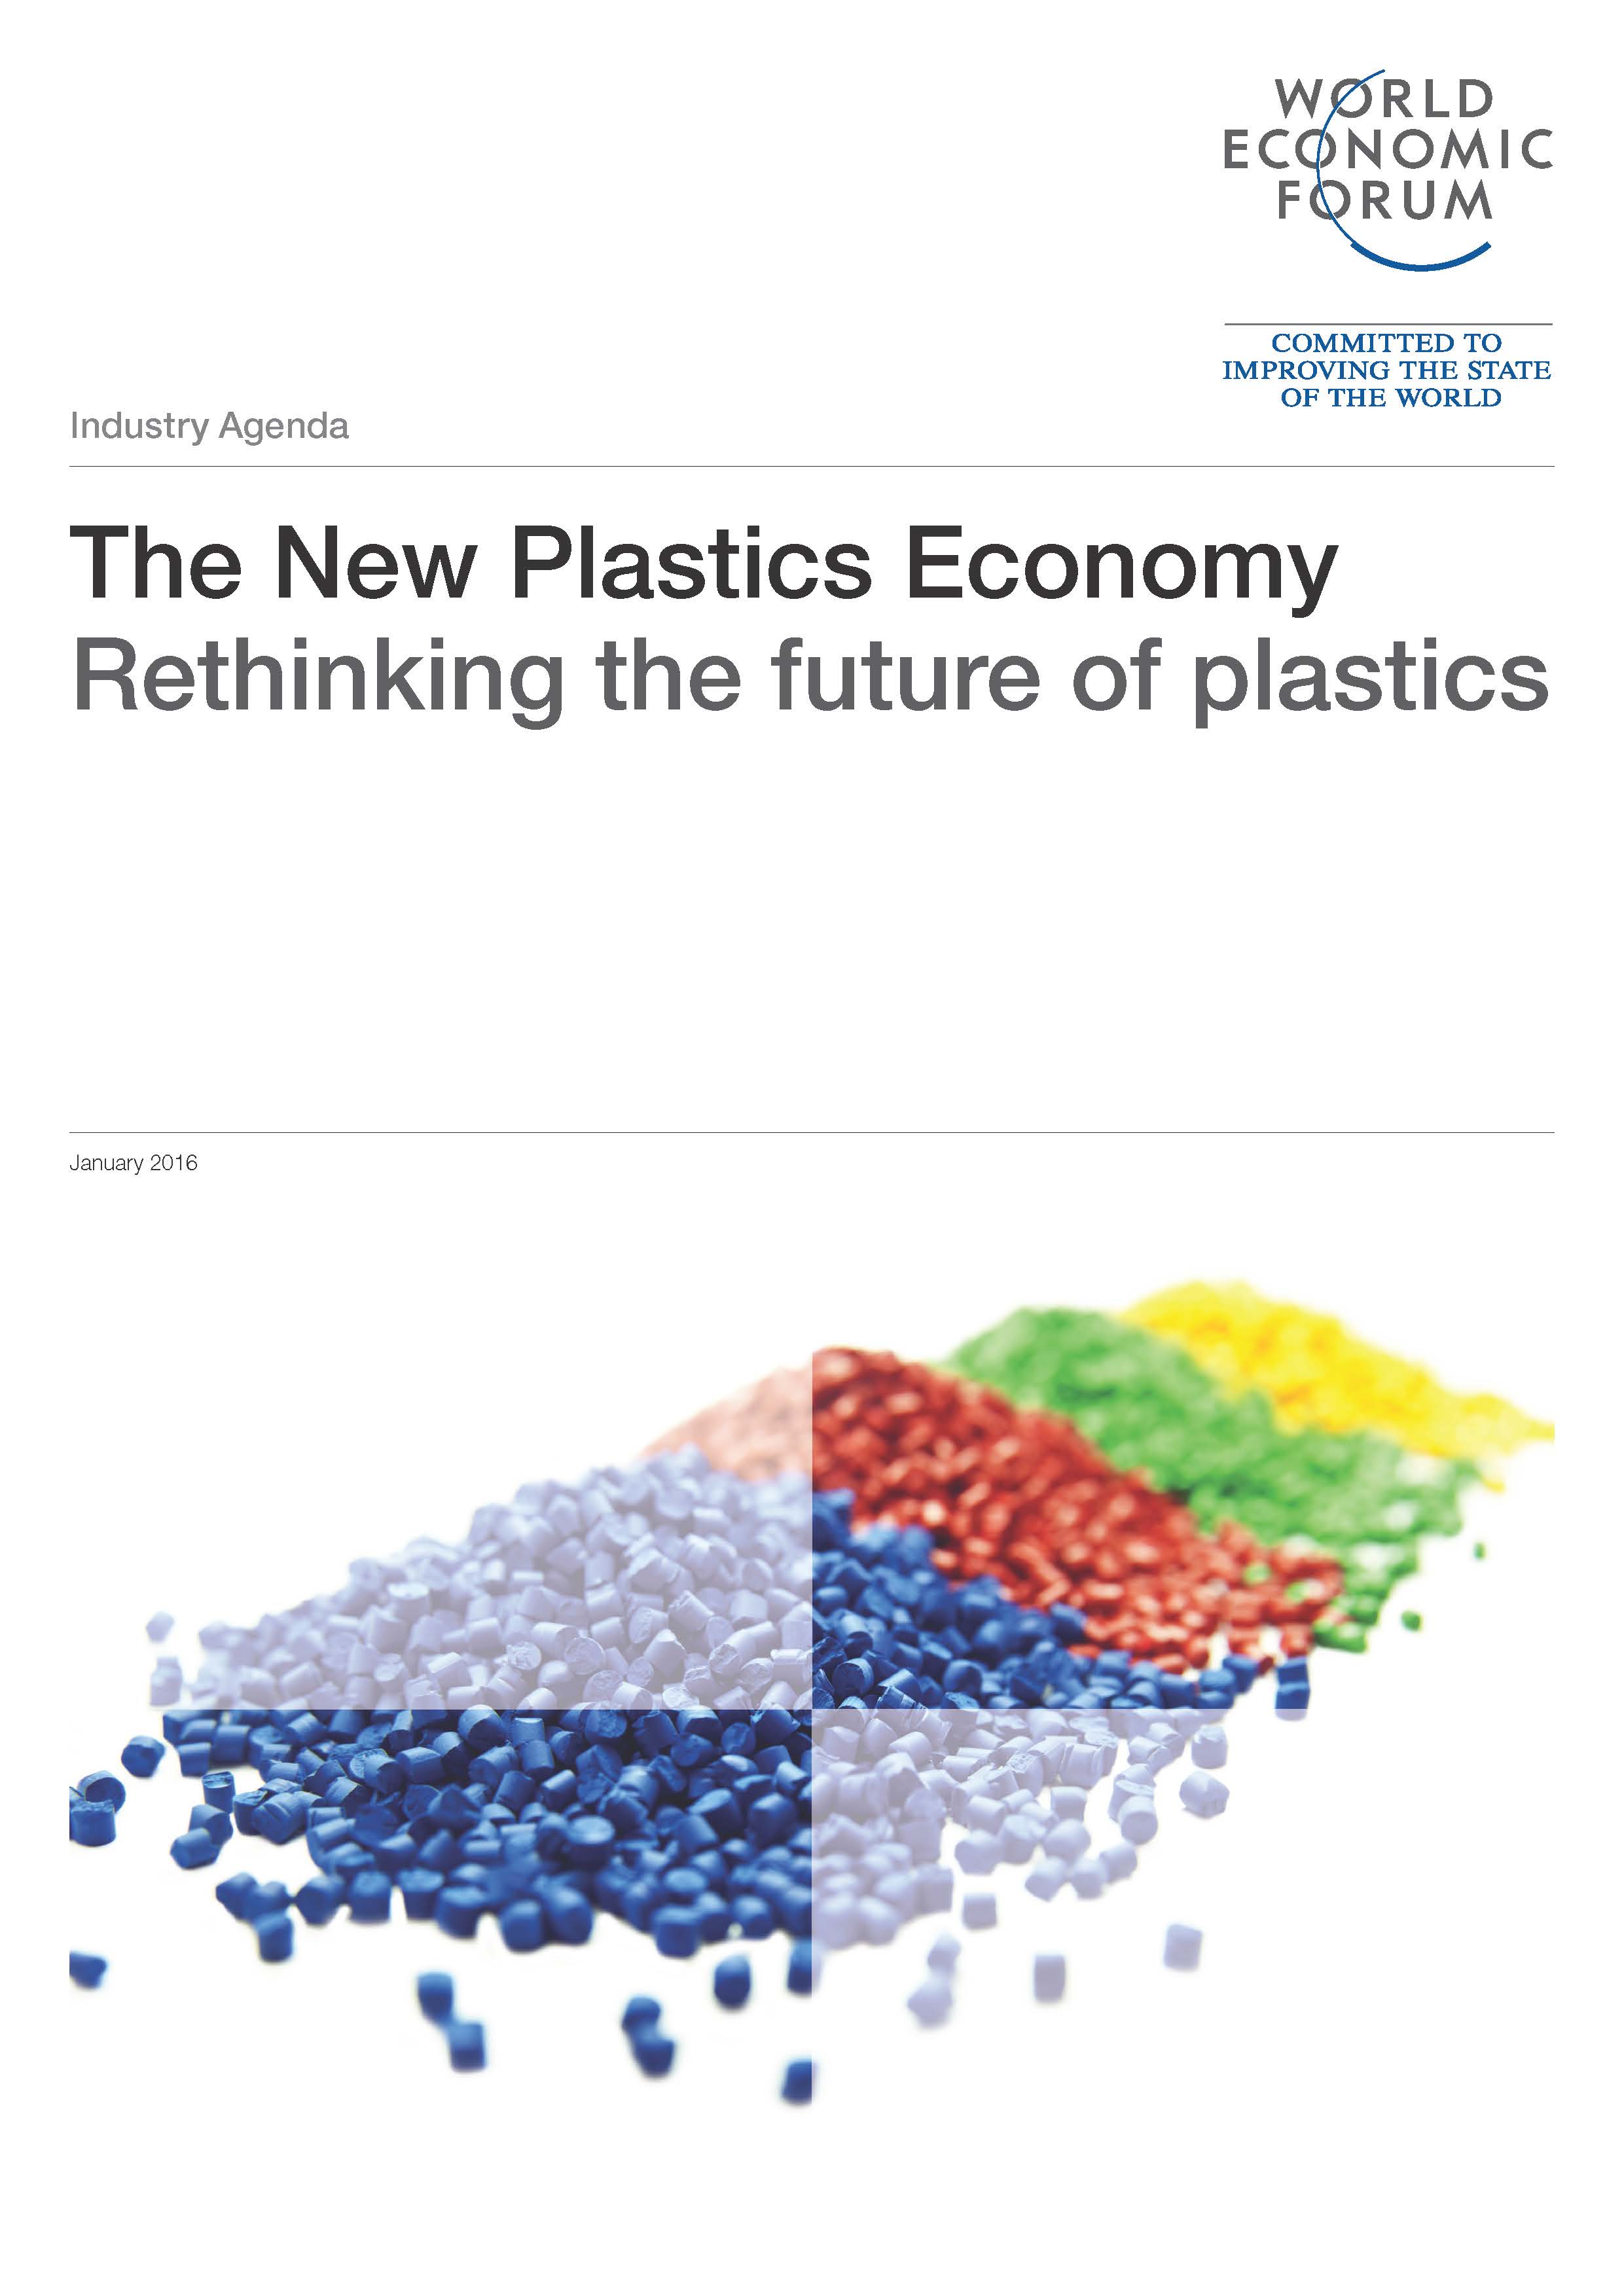 WEF_The_New_Plastics_Economy.jpg